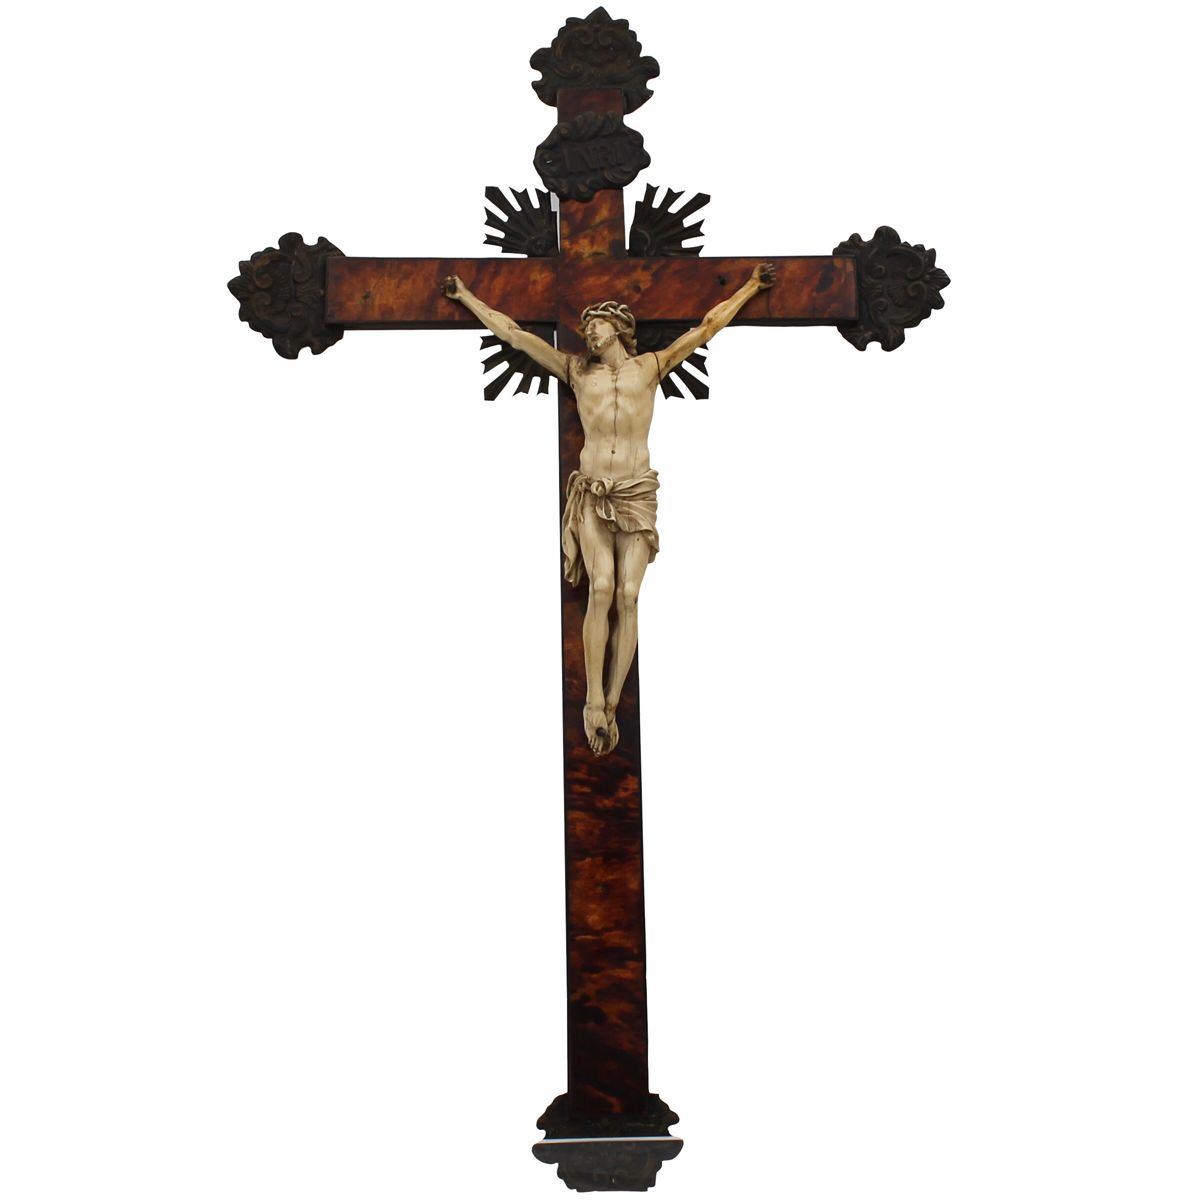 CROCIFISSO - CRUCIFIX 象牙雕刻的海龟形十字架，刻有金属尖端。西西里岛。十八世纪。Cm 22x15 (基督) Cm 55x33 (十字架)
&hellip;